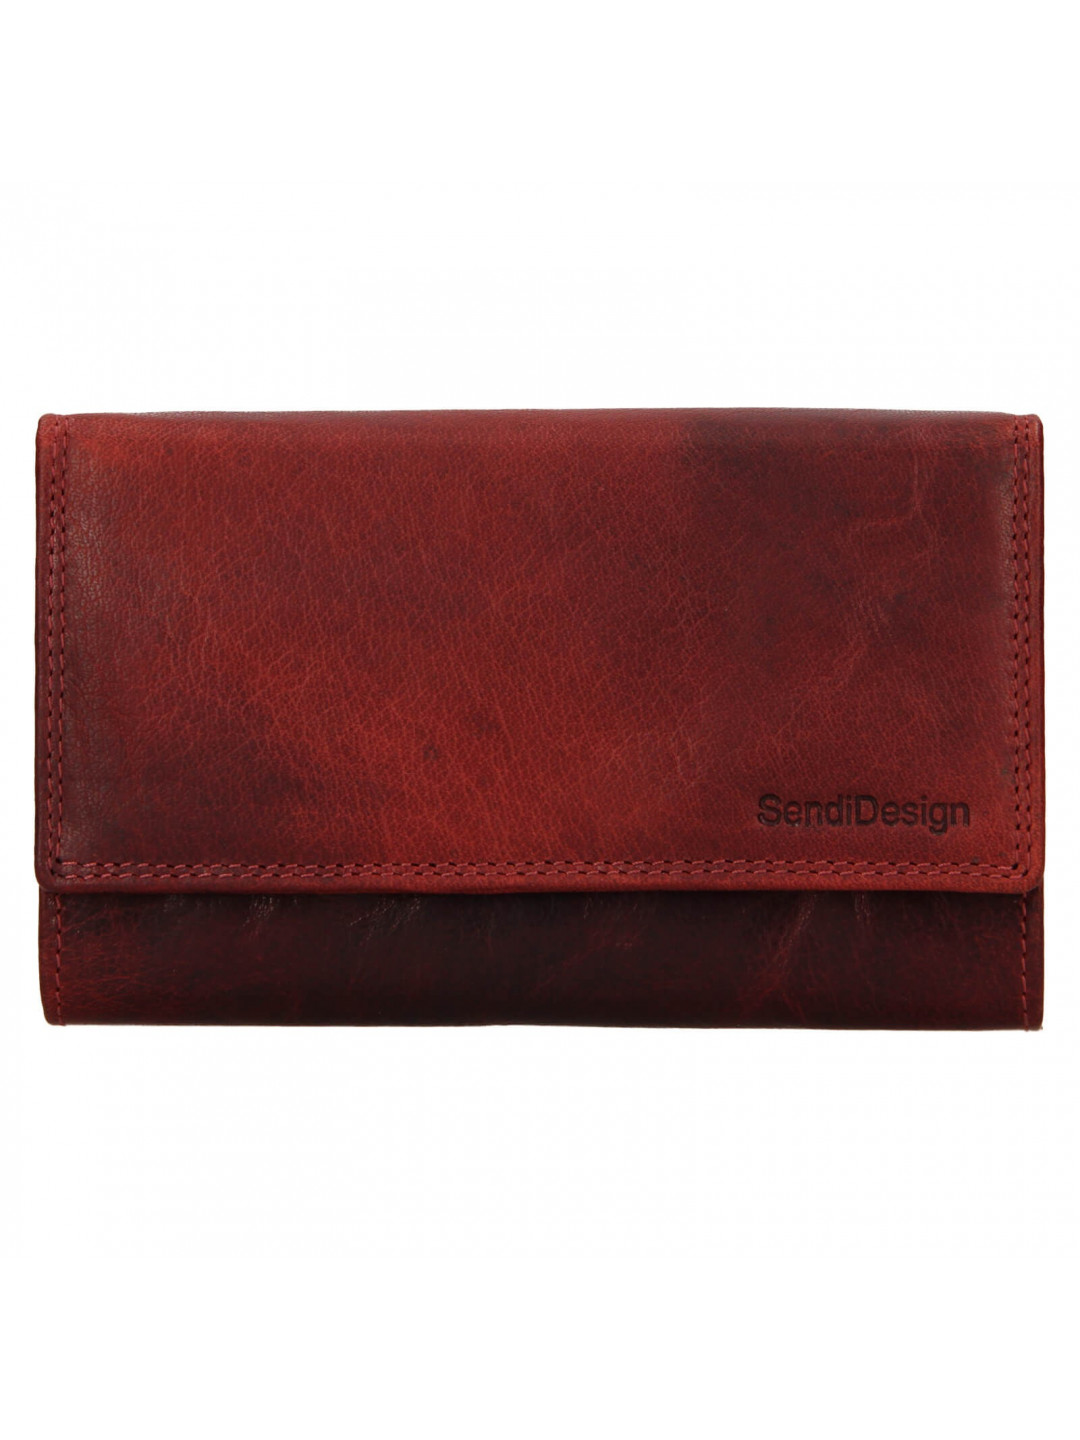 Dámská kožená peněženka SendiDesign Ember – červená